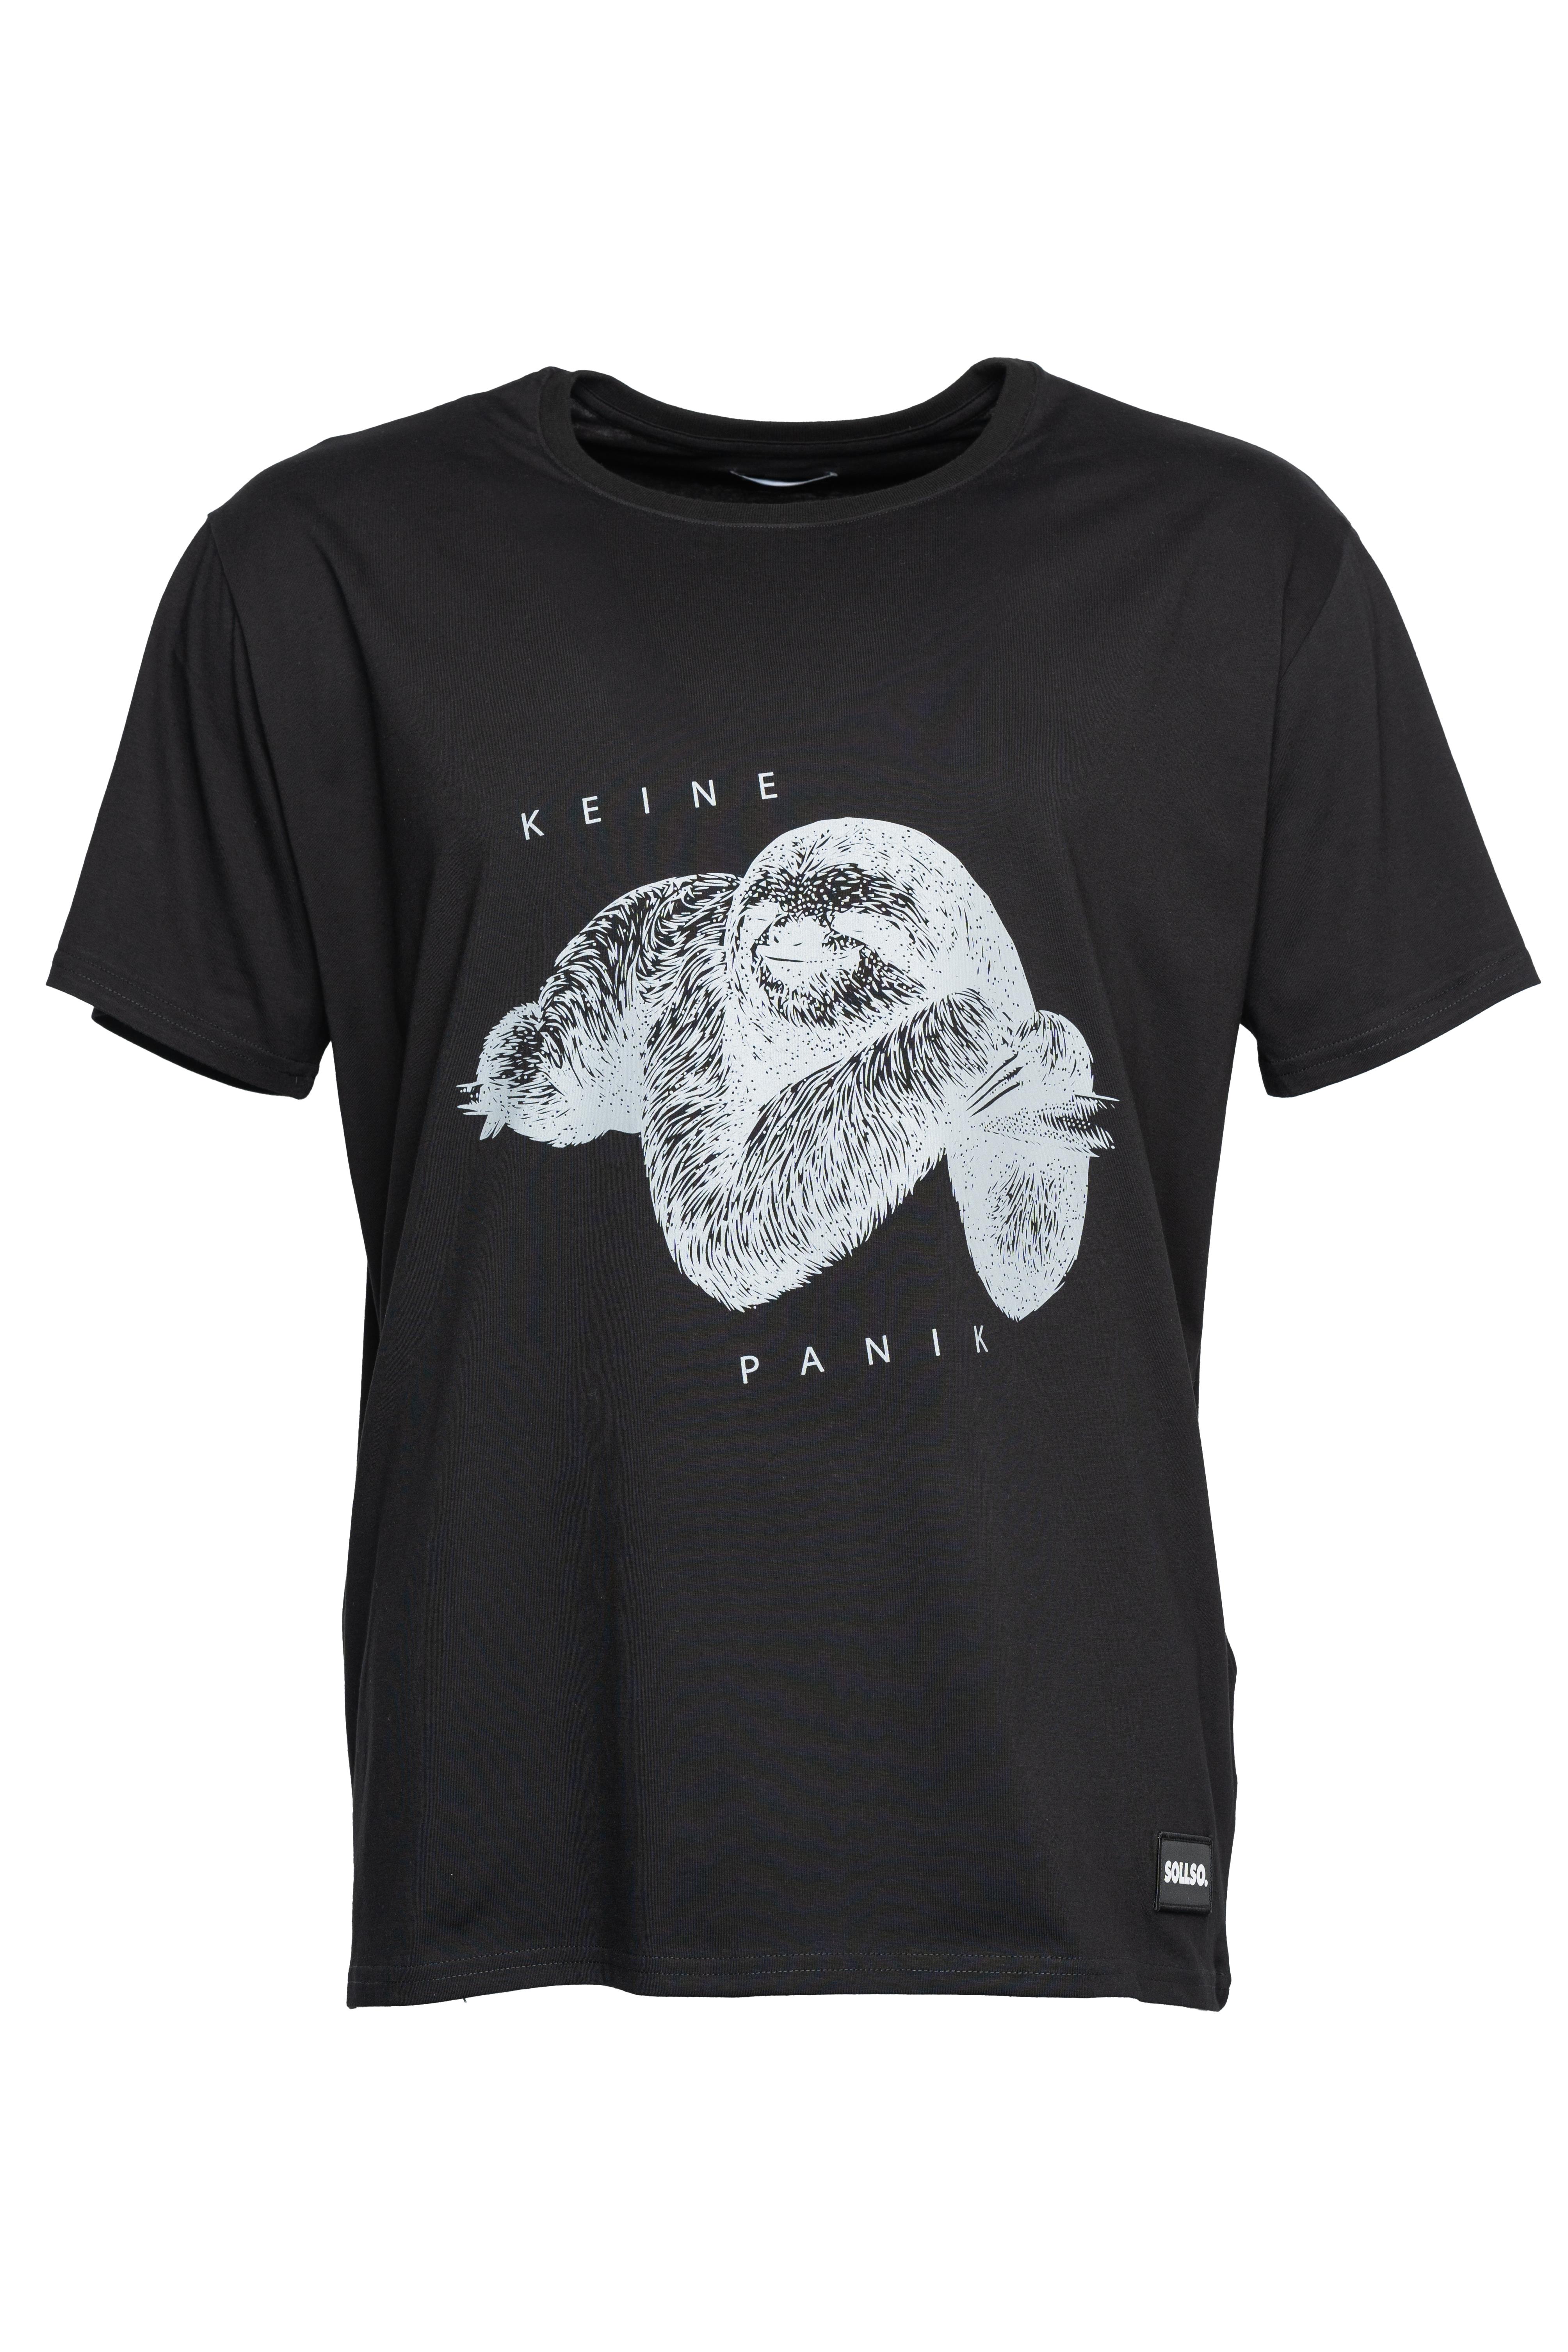 SOLLSO. T-Shirt "Keine Panik Faultier", Farbe Dark Black, Größe 5XL